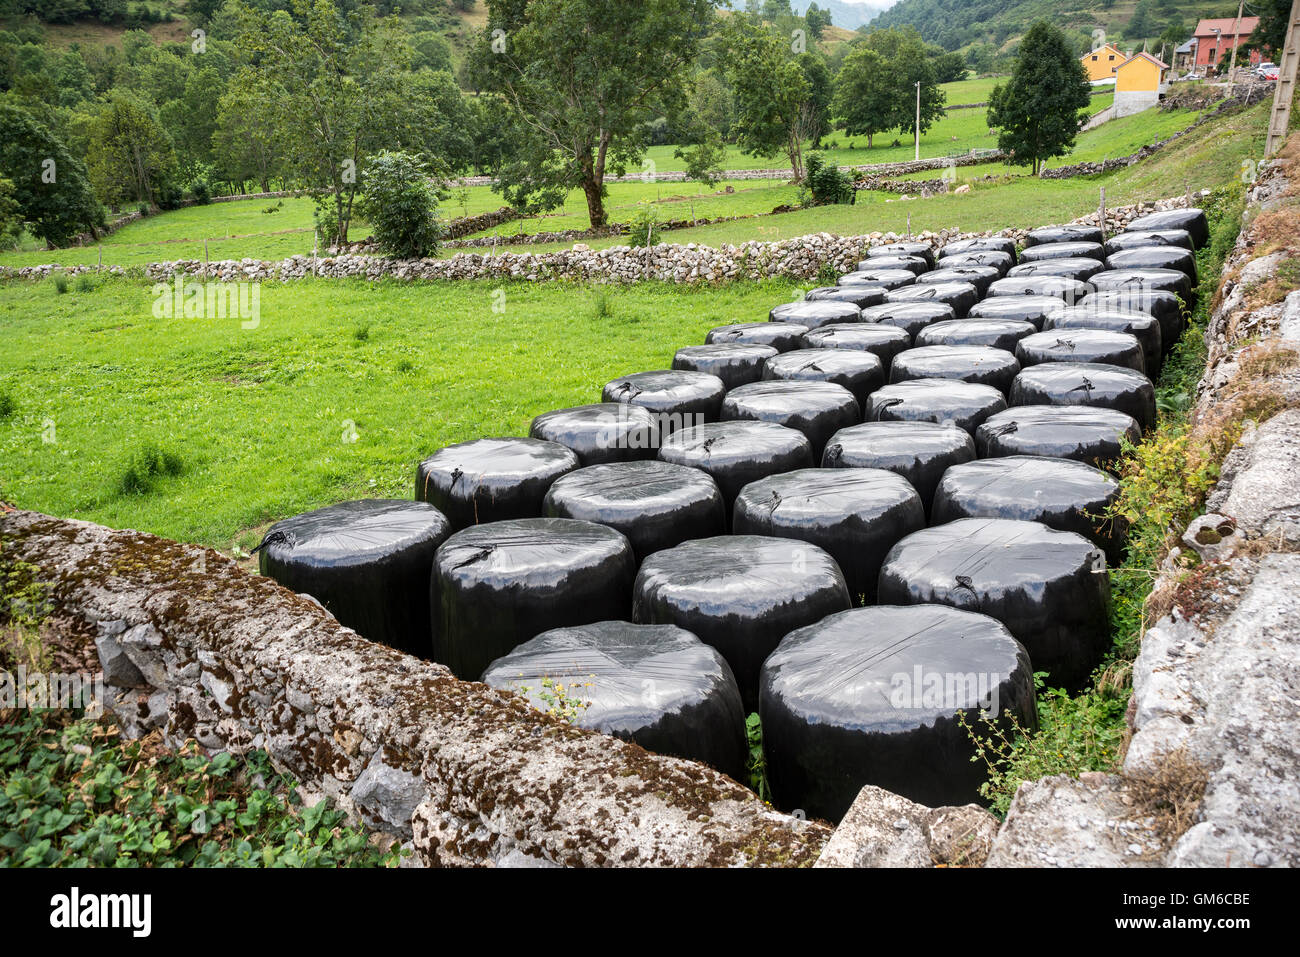 Ballen von Silage in einem Feld in Naturpark Somiedo, Fürstentum Asturien, Spanien Stockfoto